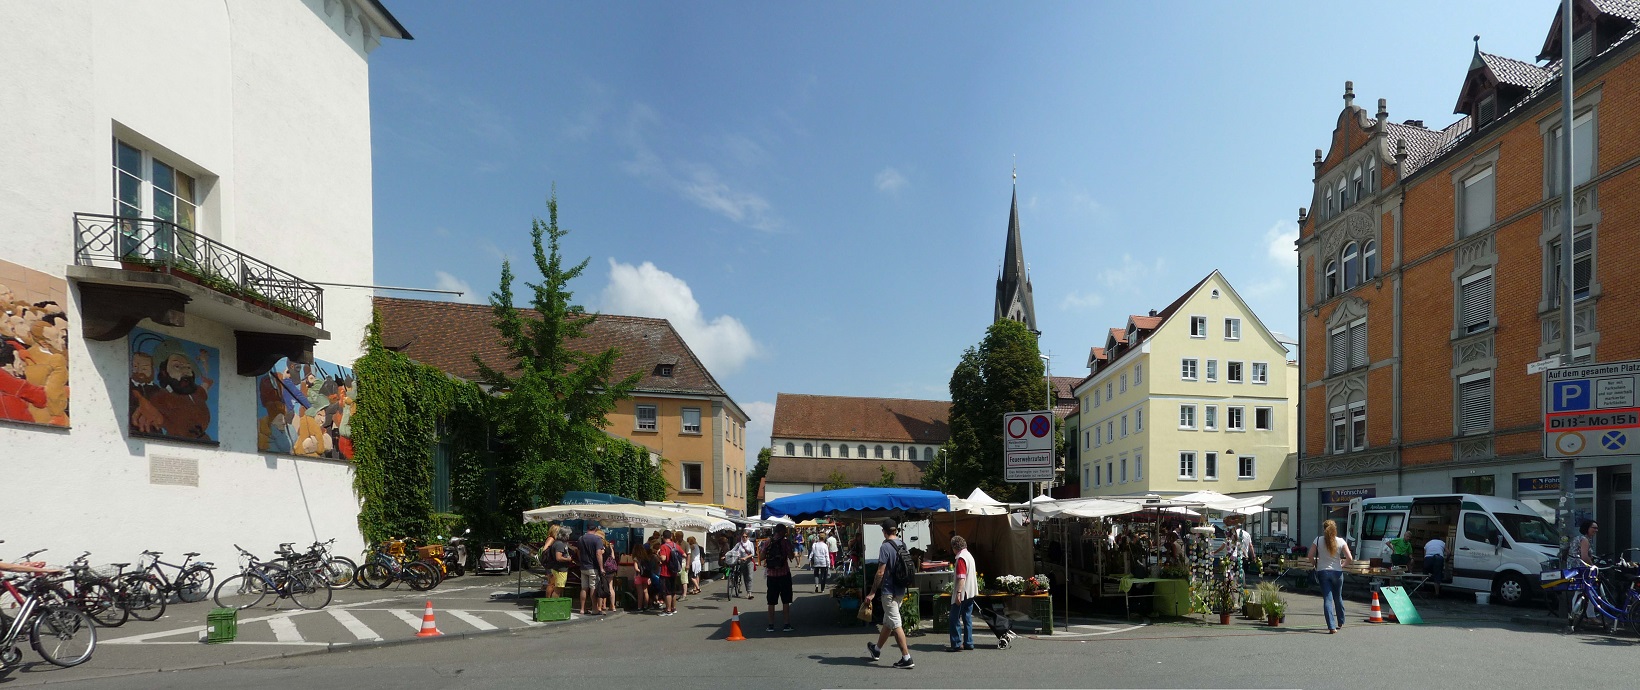 Wochenmarkt auf dem Stephansplatz